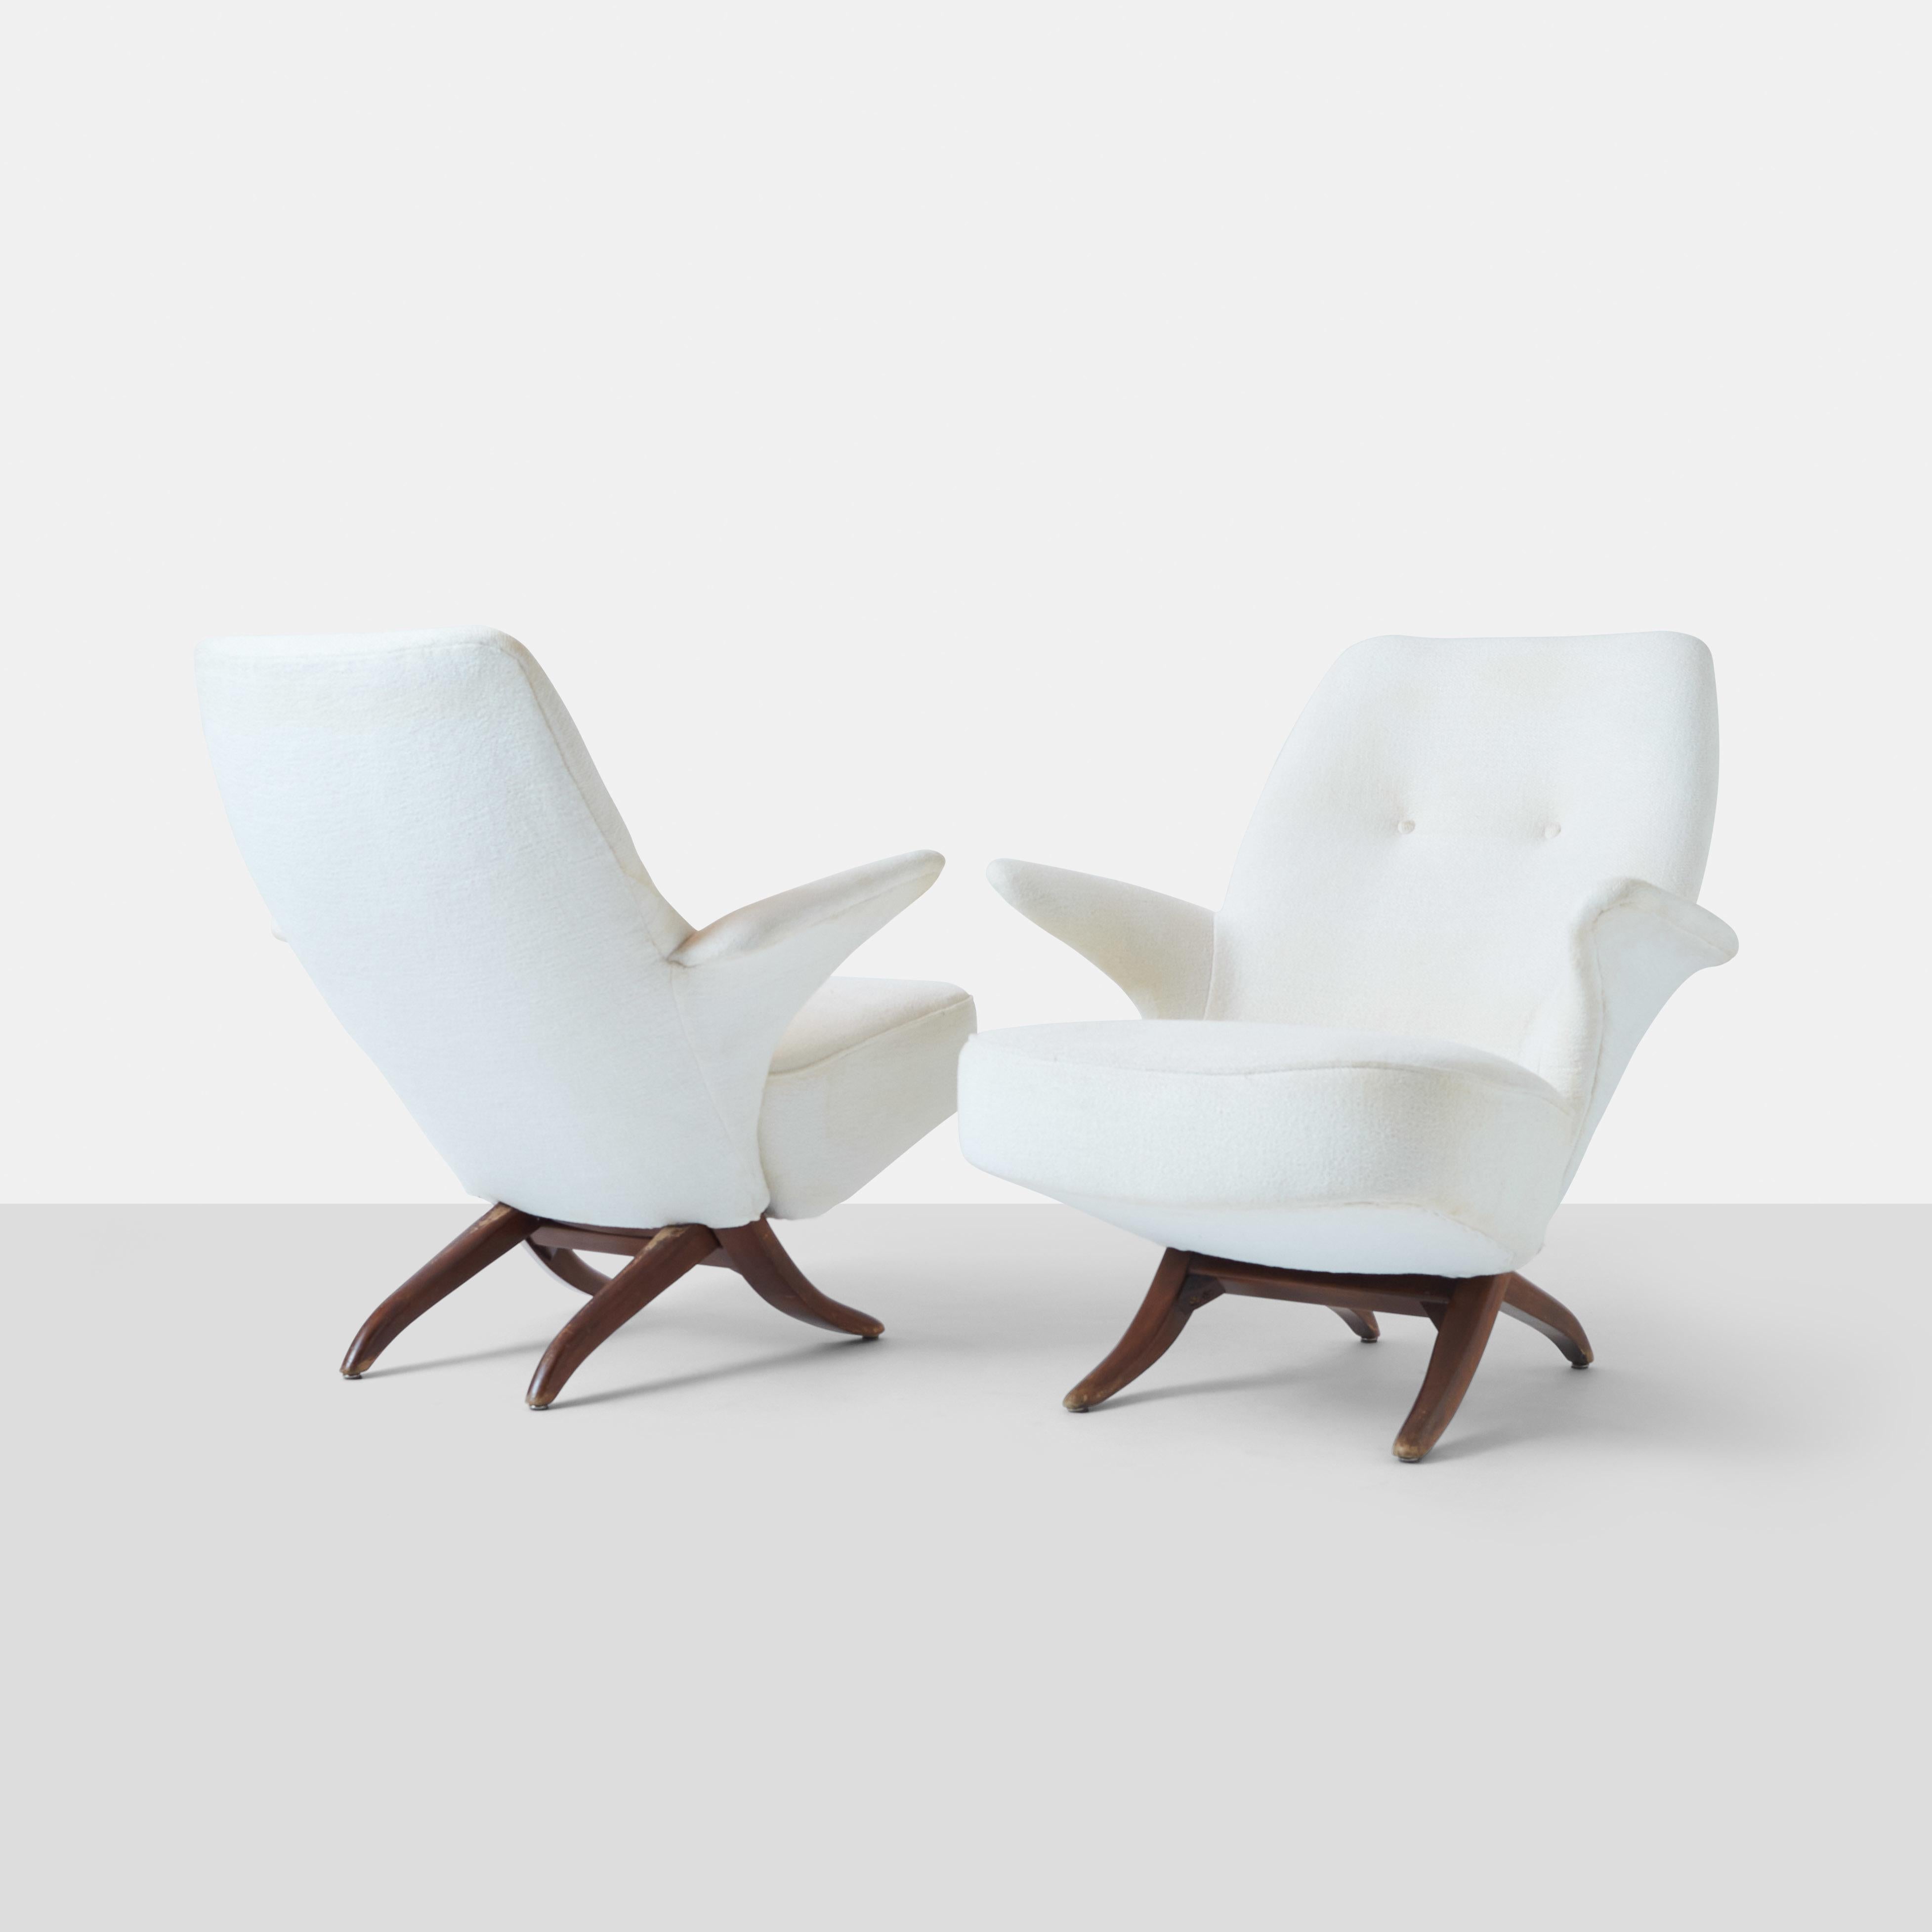  Ein Paar Penguin-Loungesessel von Theo Ruth für Artifort. Der Stuhl basiert auf einem afrikanischen Stuhlentwurf und ist der Nachfolger seines eigenen Kongo-Stuhls. Sitz und Rückenlehne können durch ein modulares Design, das aus zwei ineinander